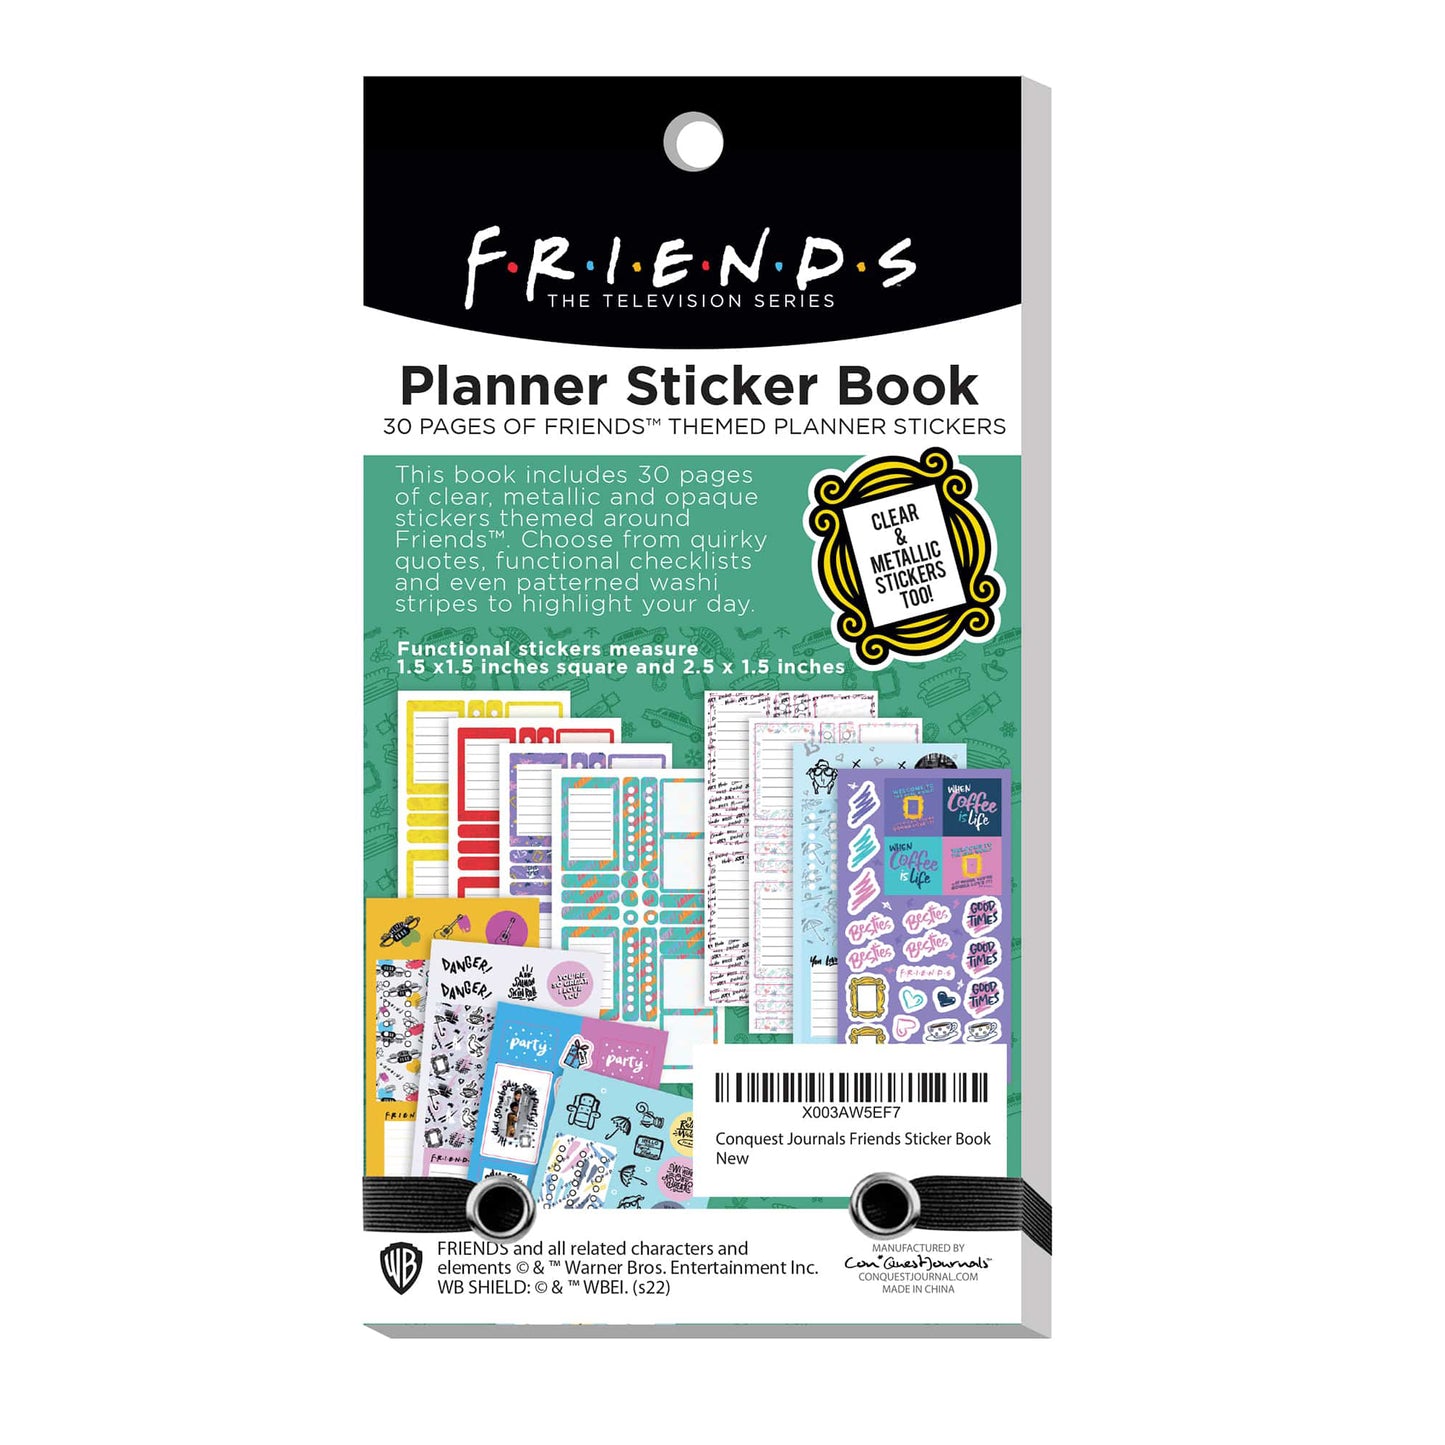 Friends Planner Sticker Book